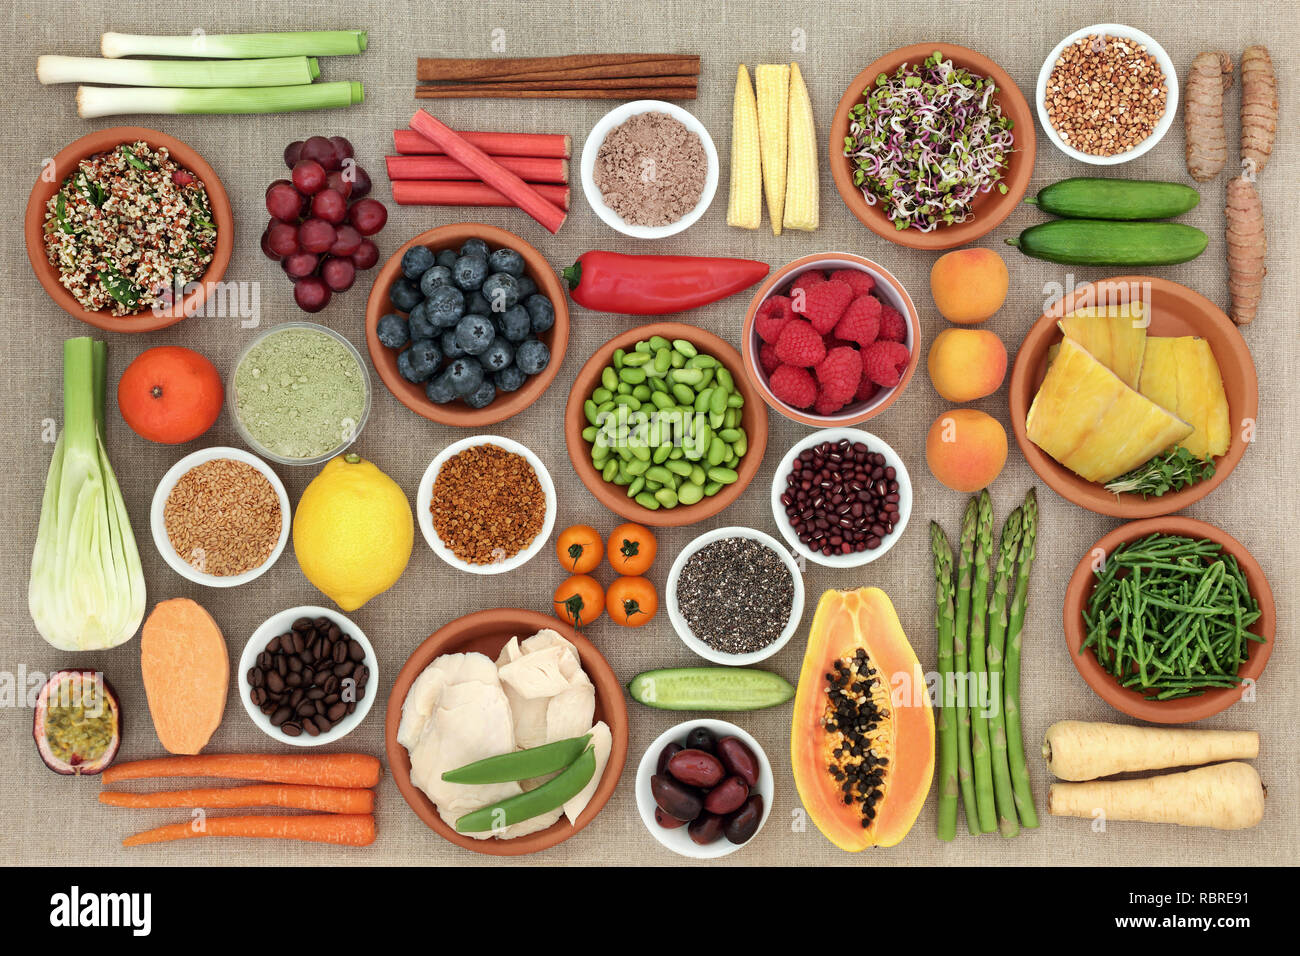 Gesunde Ernährung Lebensmittel wie Fisch, Fleisch, Getreide, Samen, Kaffee, Ergänzung Pulver, Obst, Gemüse und Gewürze. Stockfoto